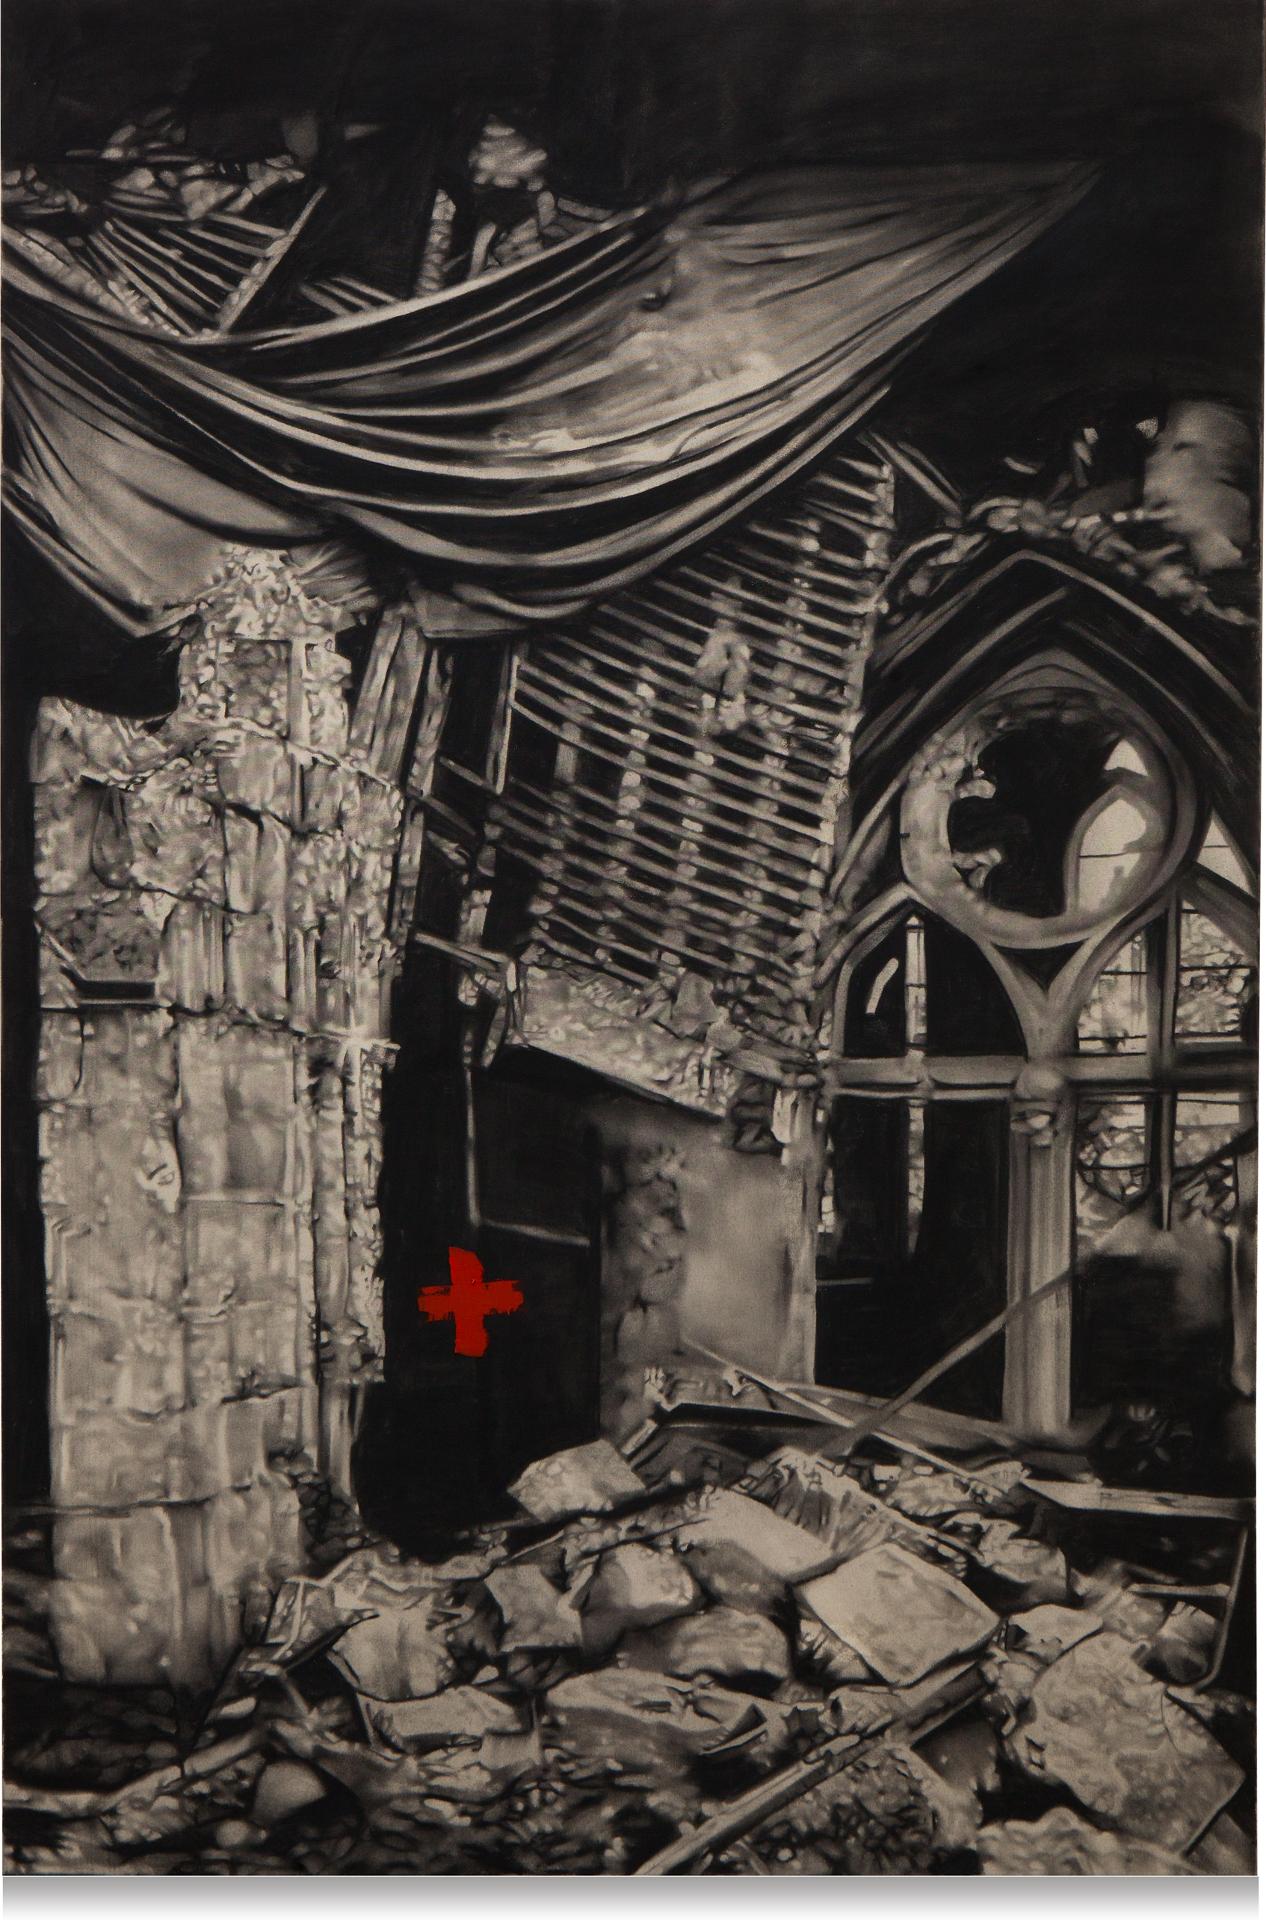 Marc Séguin (1970) - Ruins with a Cross